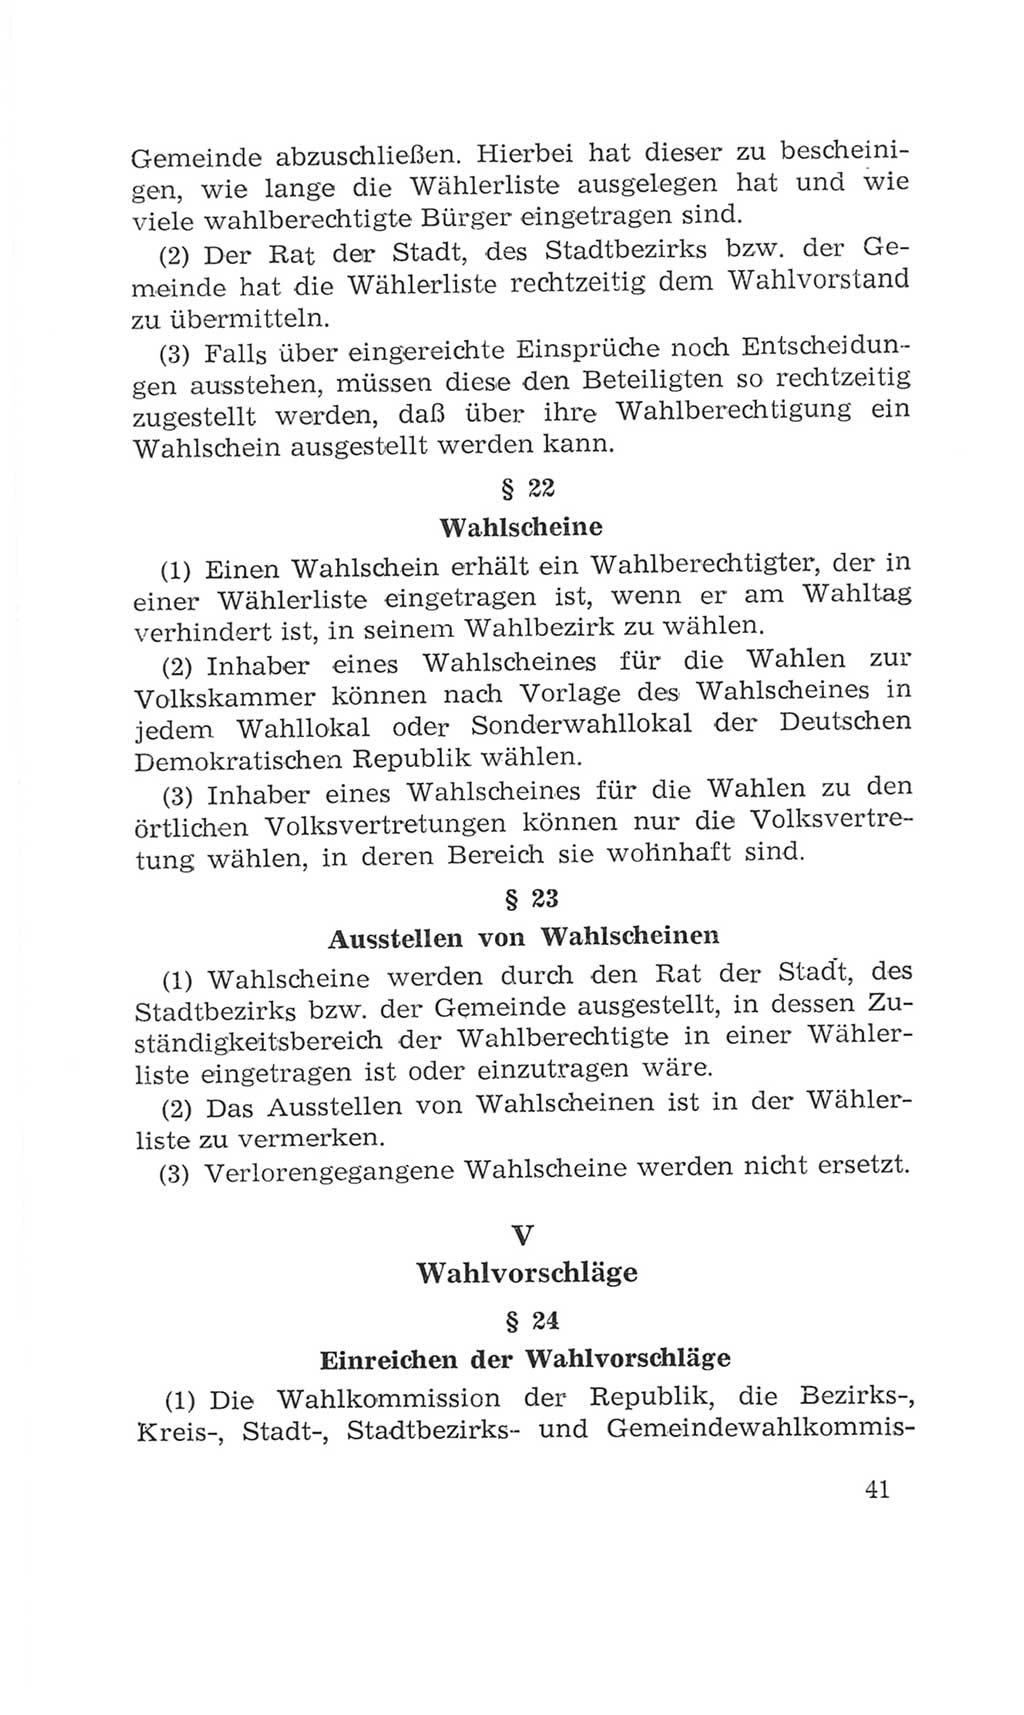 Volkskammer (VK) der Deutschen Demokratischen Republik (DDR), 4. Wahlperiode 1963-1967, Seite 41 (VK. DDR 4. WP. 1963-1967, S. 41)